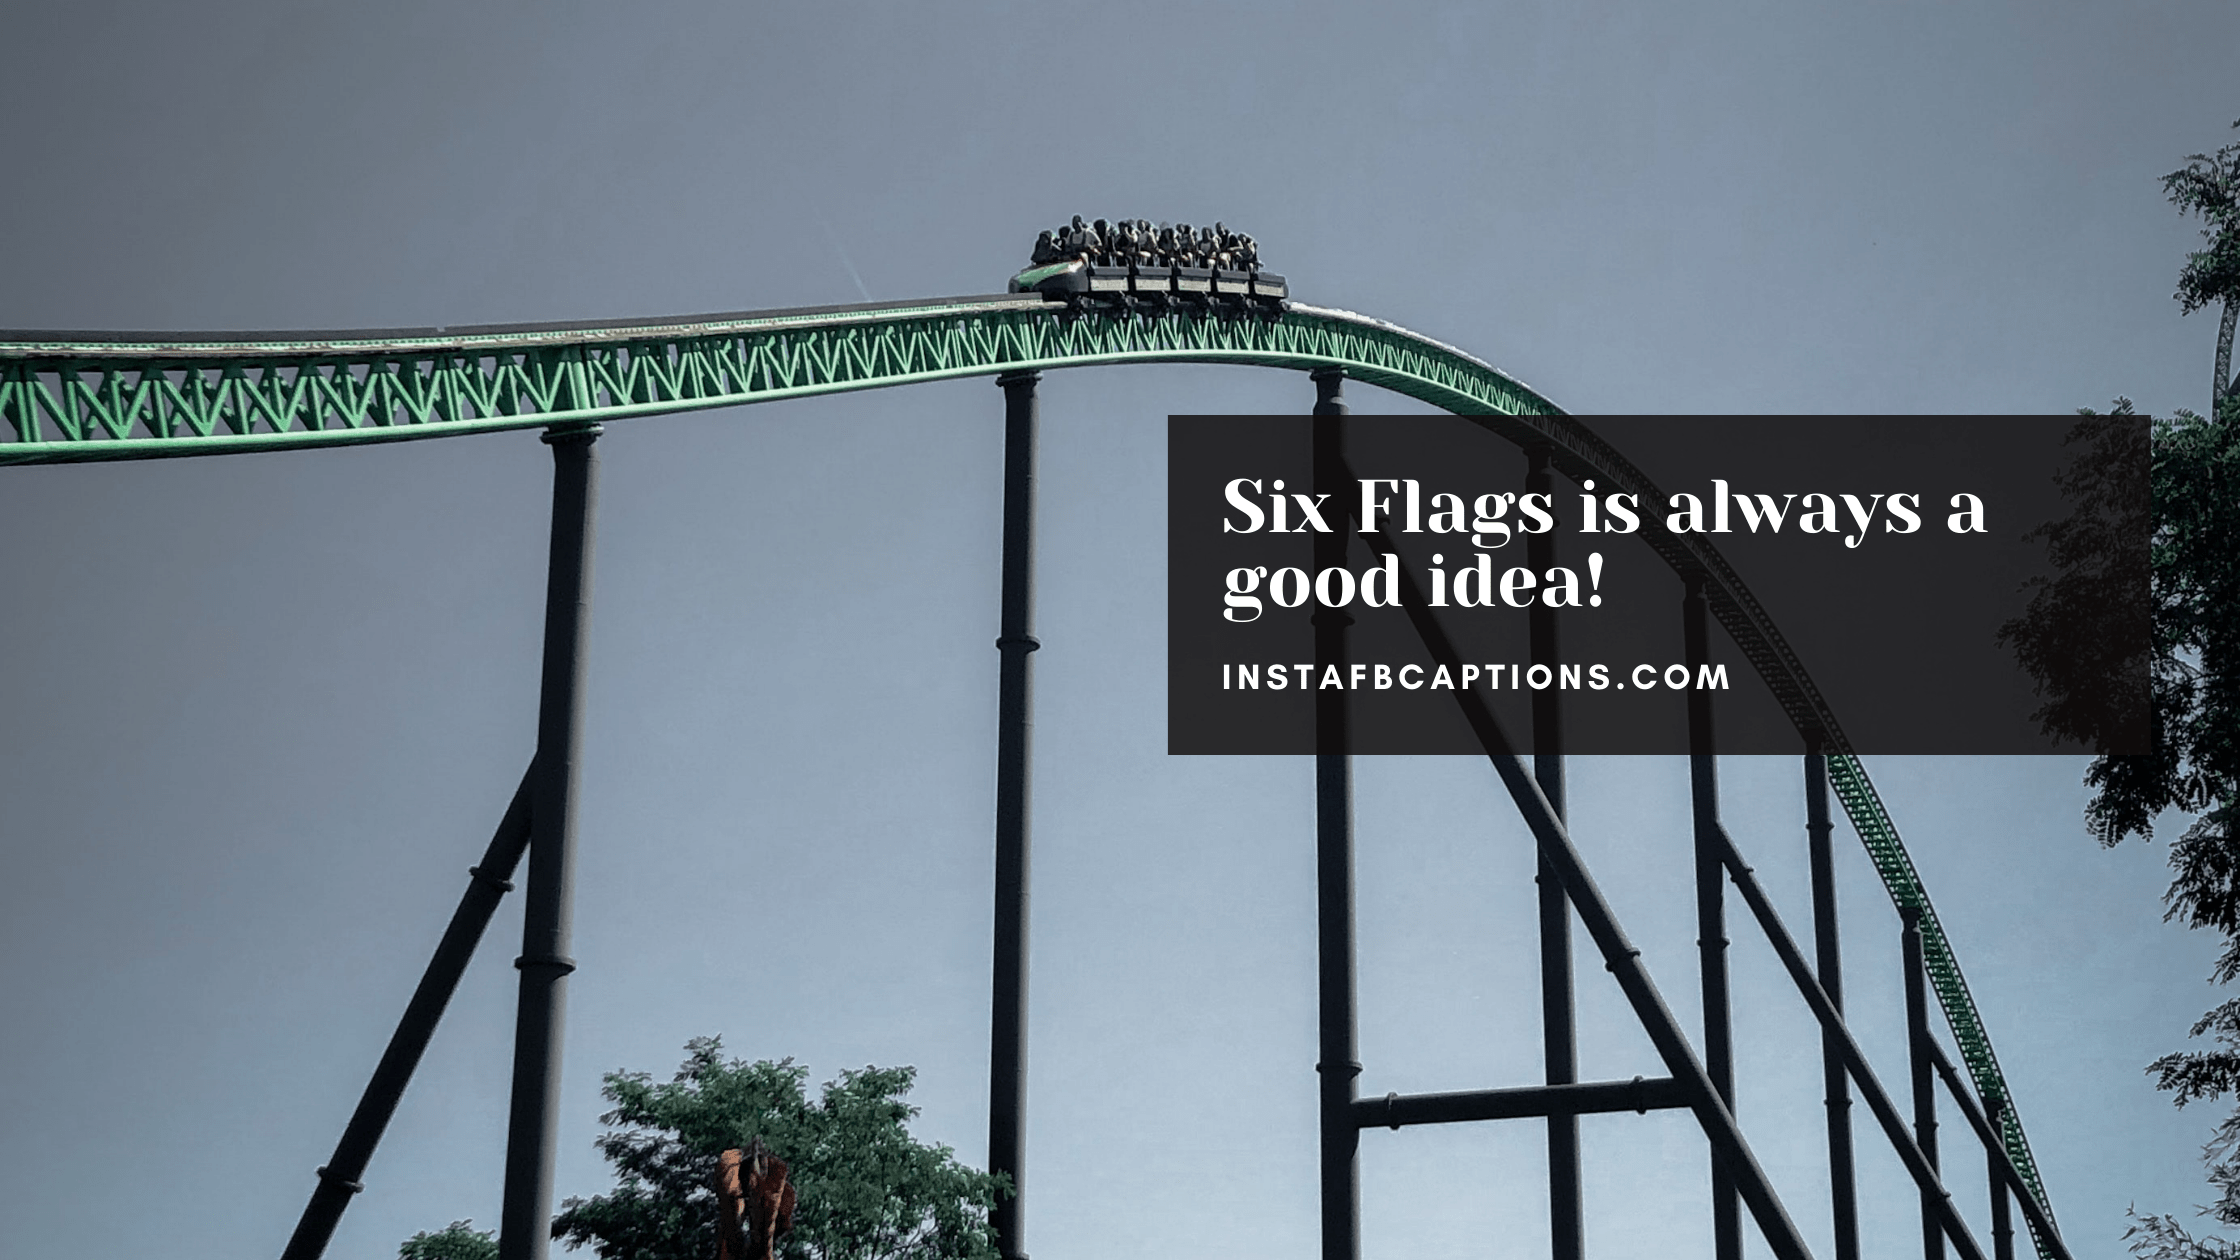 Amazing Six Flags Captions  - Amazing Six Flags Captions  - 96 Six Flags Instagram Captions in 2022